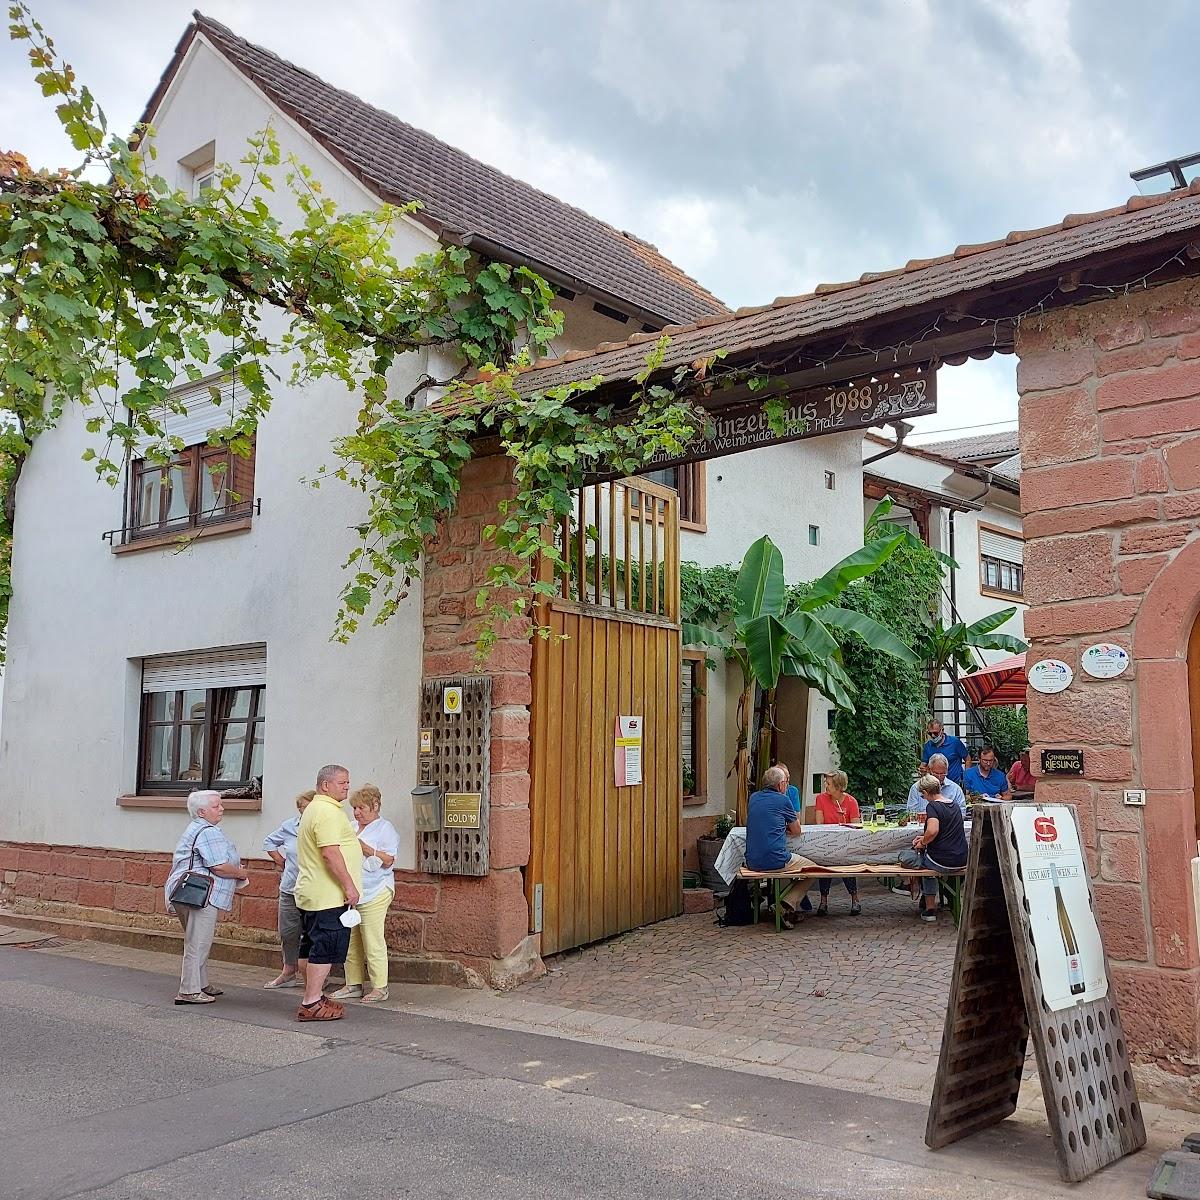 Restaurant "Stübinger Peter" in Leinsweiler